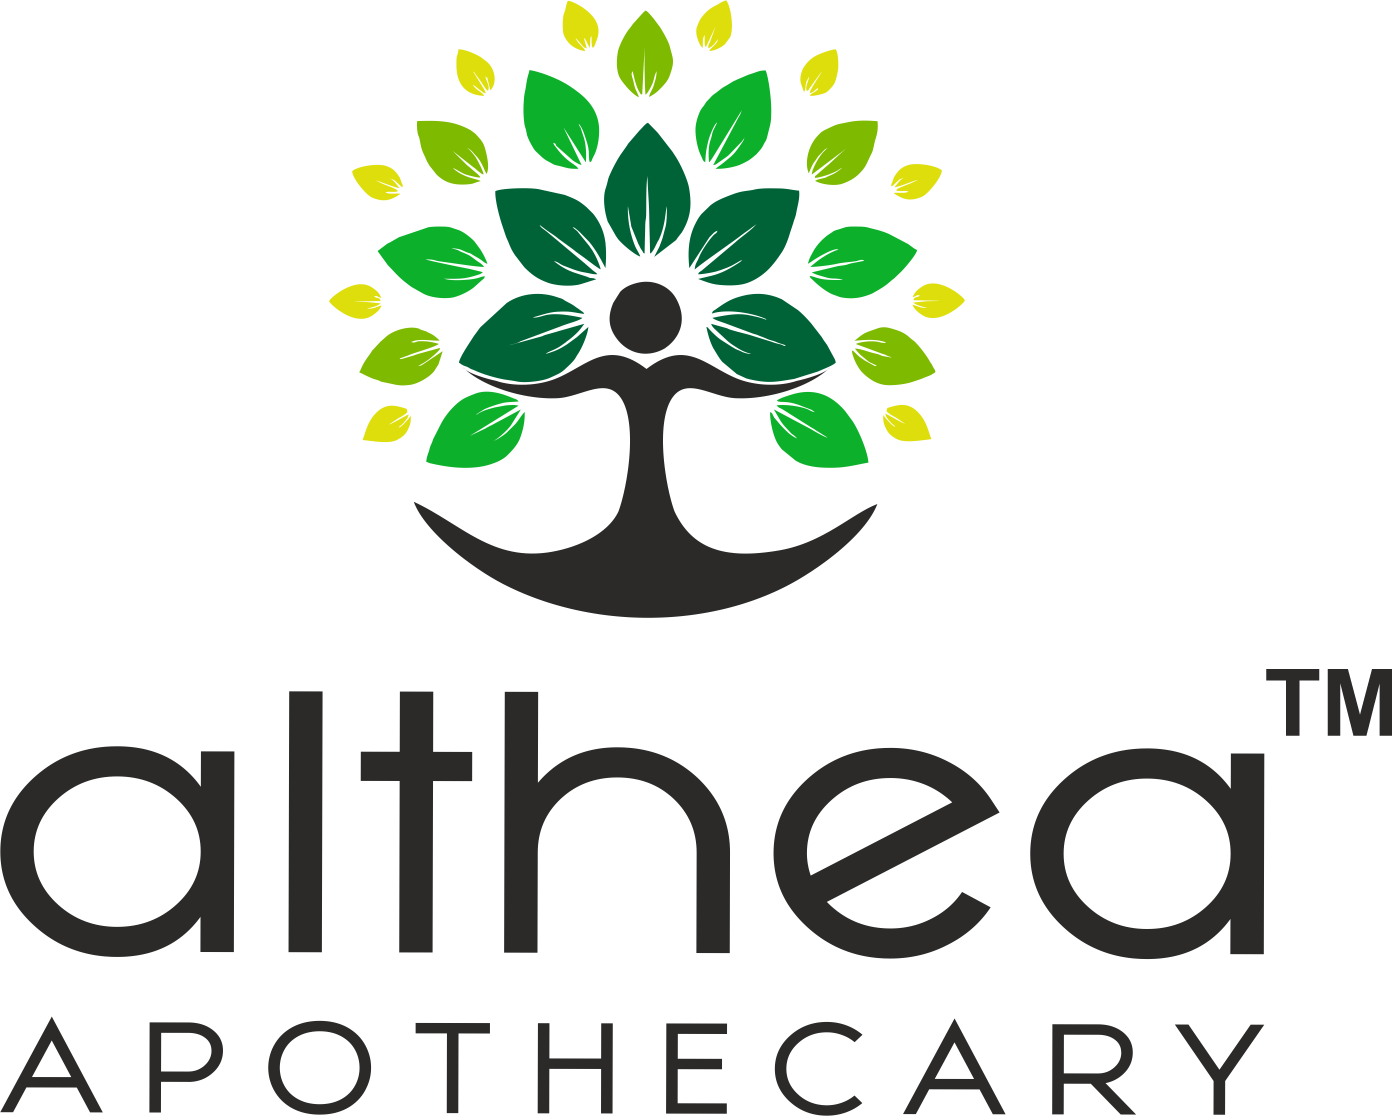 Althea Apothecary